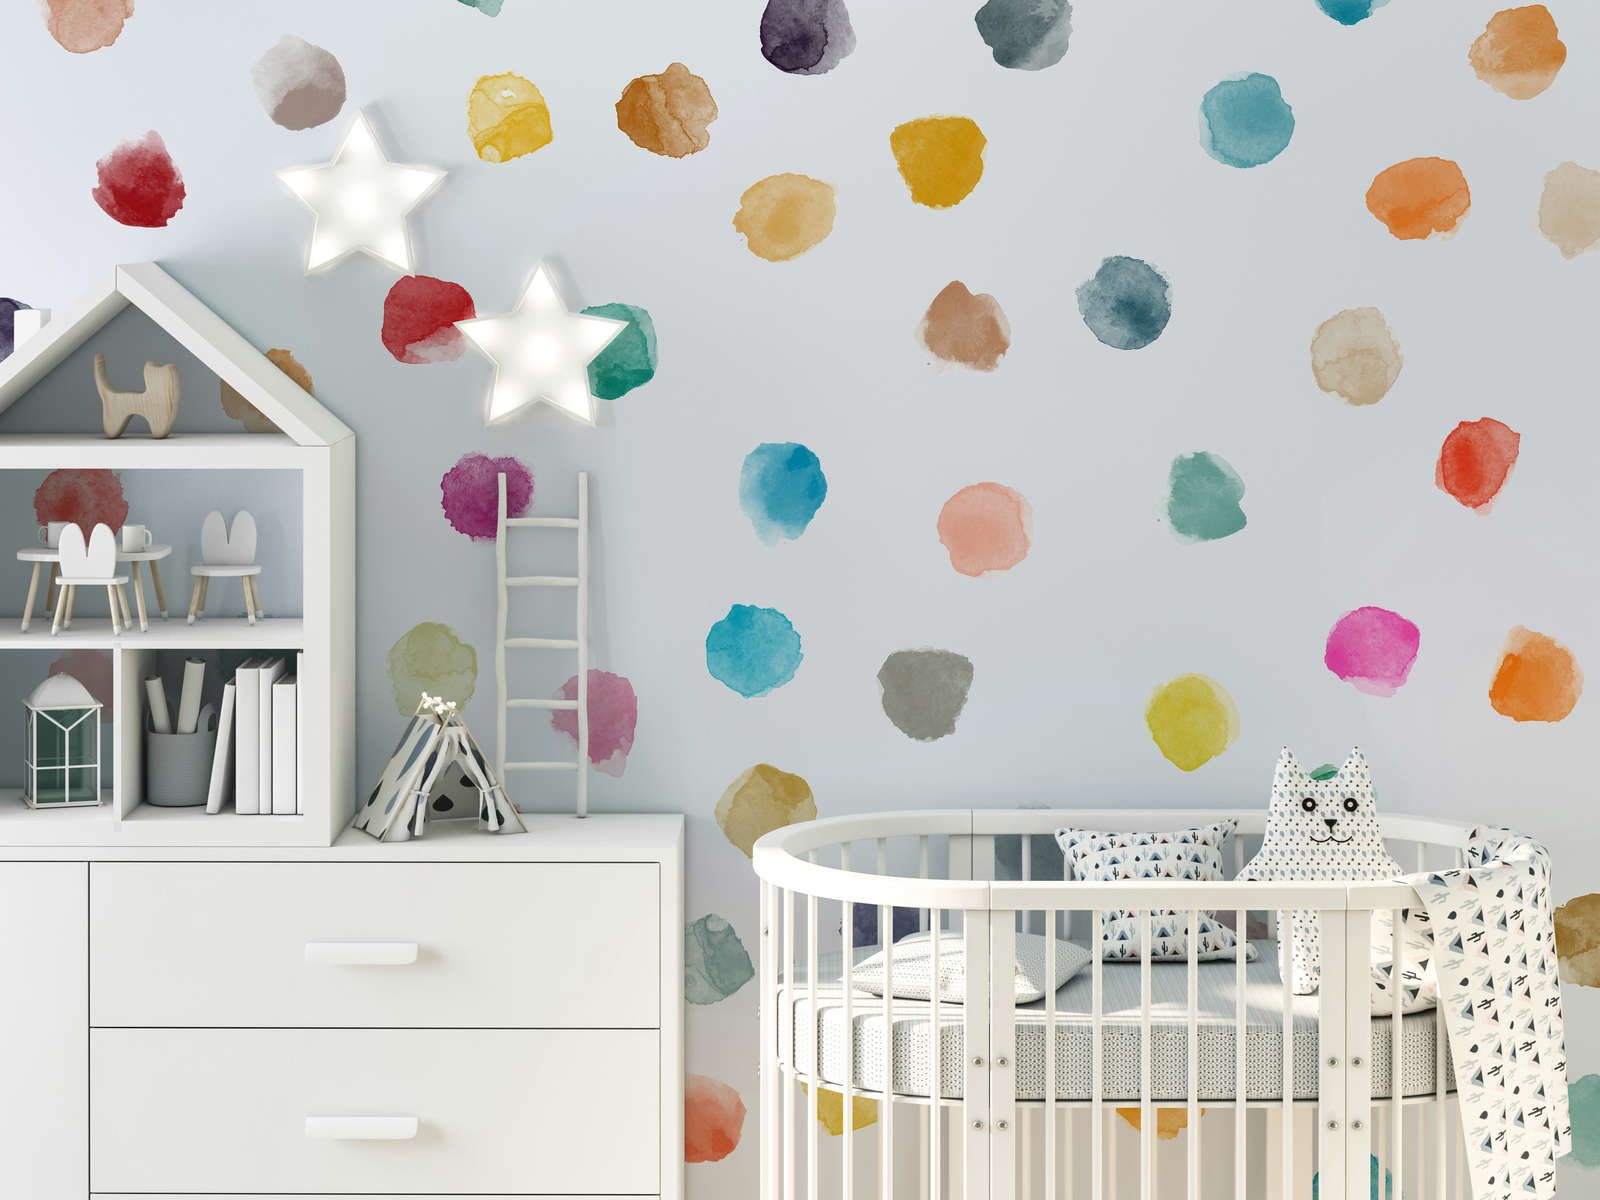             Kinderkamer muurschildering met kleurrijke stippen - Glad & mat vlies
        